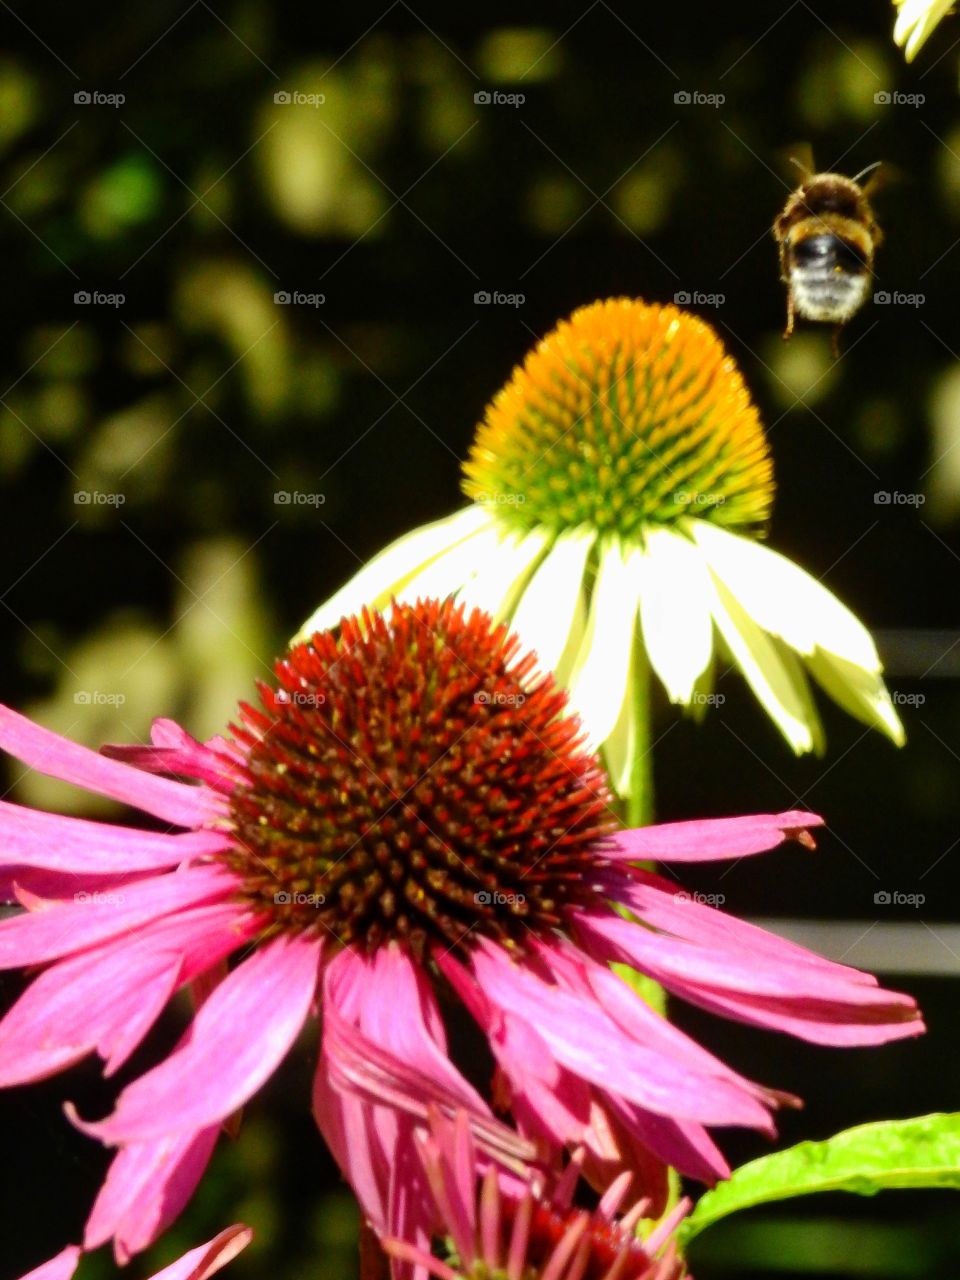 Bumblebee flying near flower